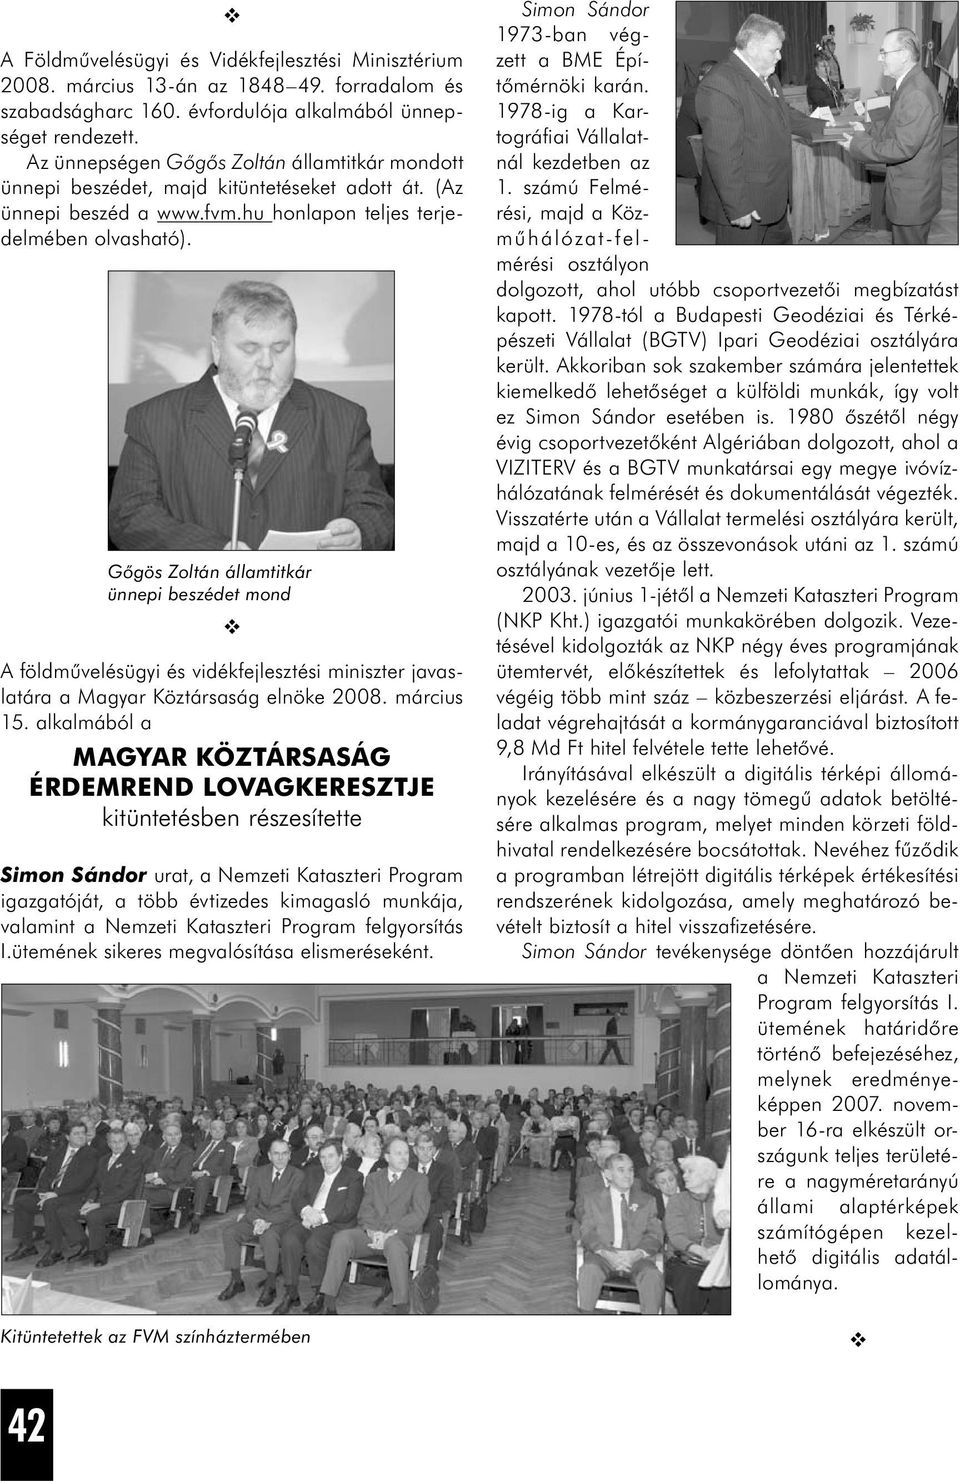 Gőgös Zoltán államtitkár ünnepi beszédet mond A földművelésügyi és vidékfejlesztési miniszter javaslatára a Magyar Köztársaság elnöke 2008. március 15.